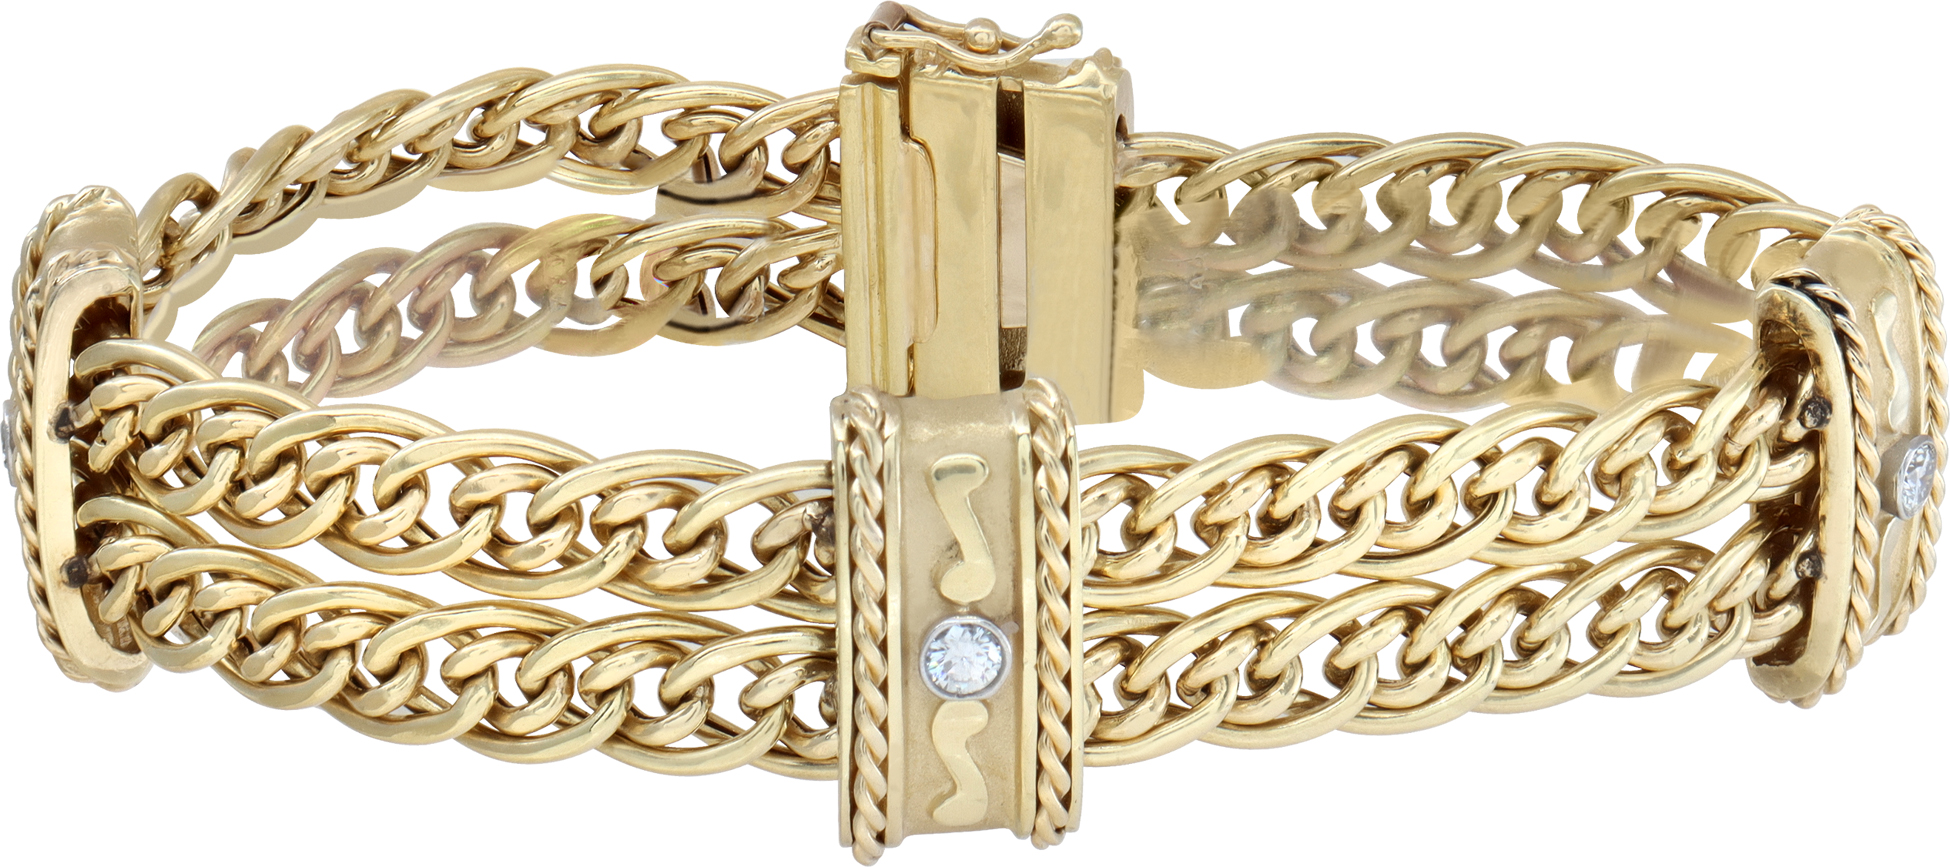 Etruscan revival 18k gold & diamond bracelet